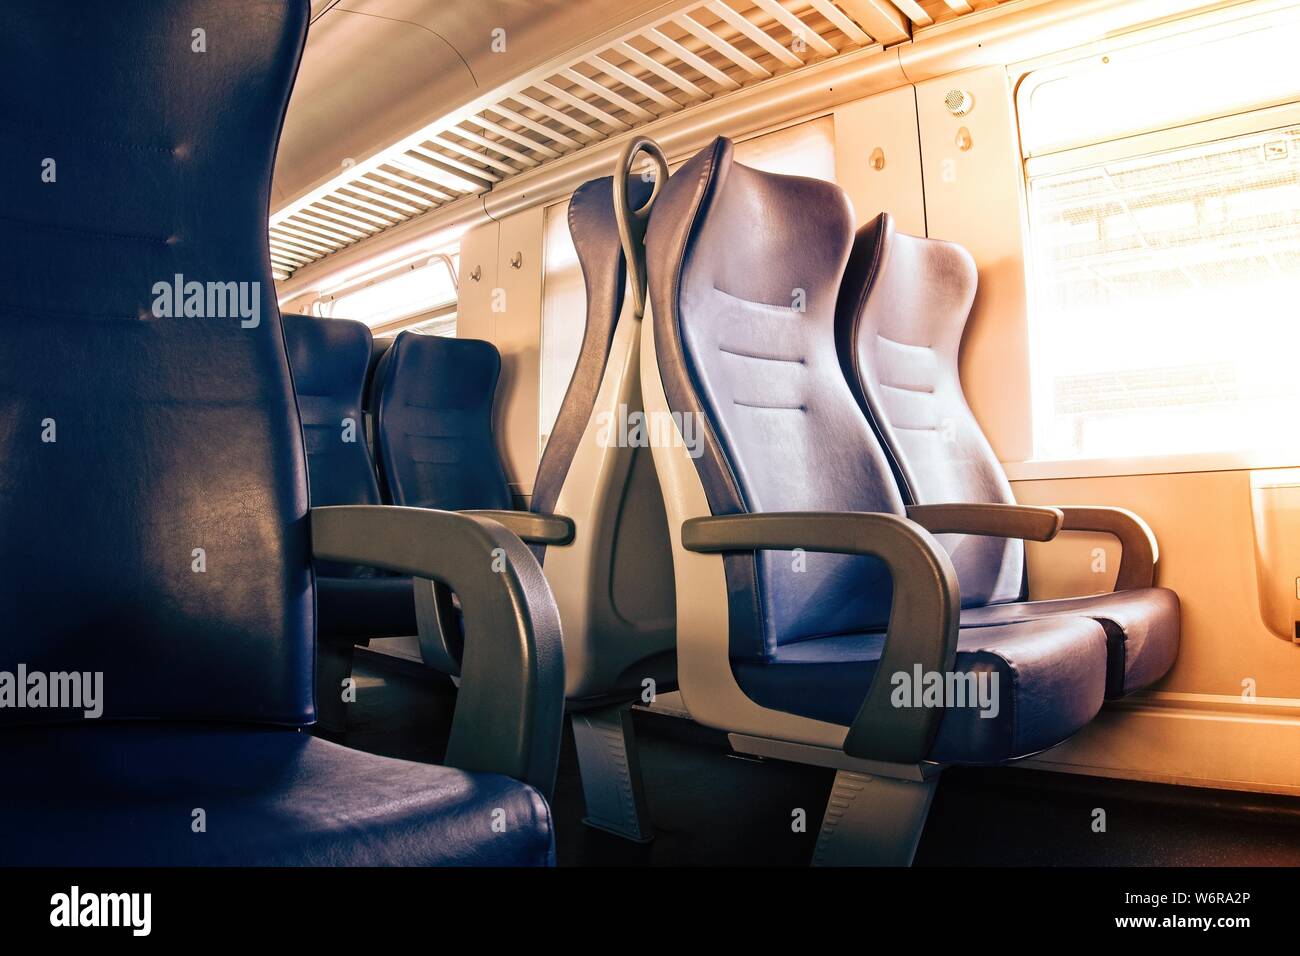 Interno di un treno passeggeri con sedi vuote Foto Stock